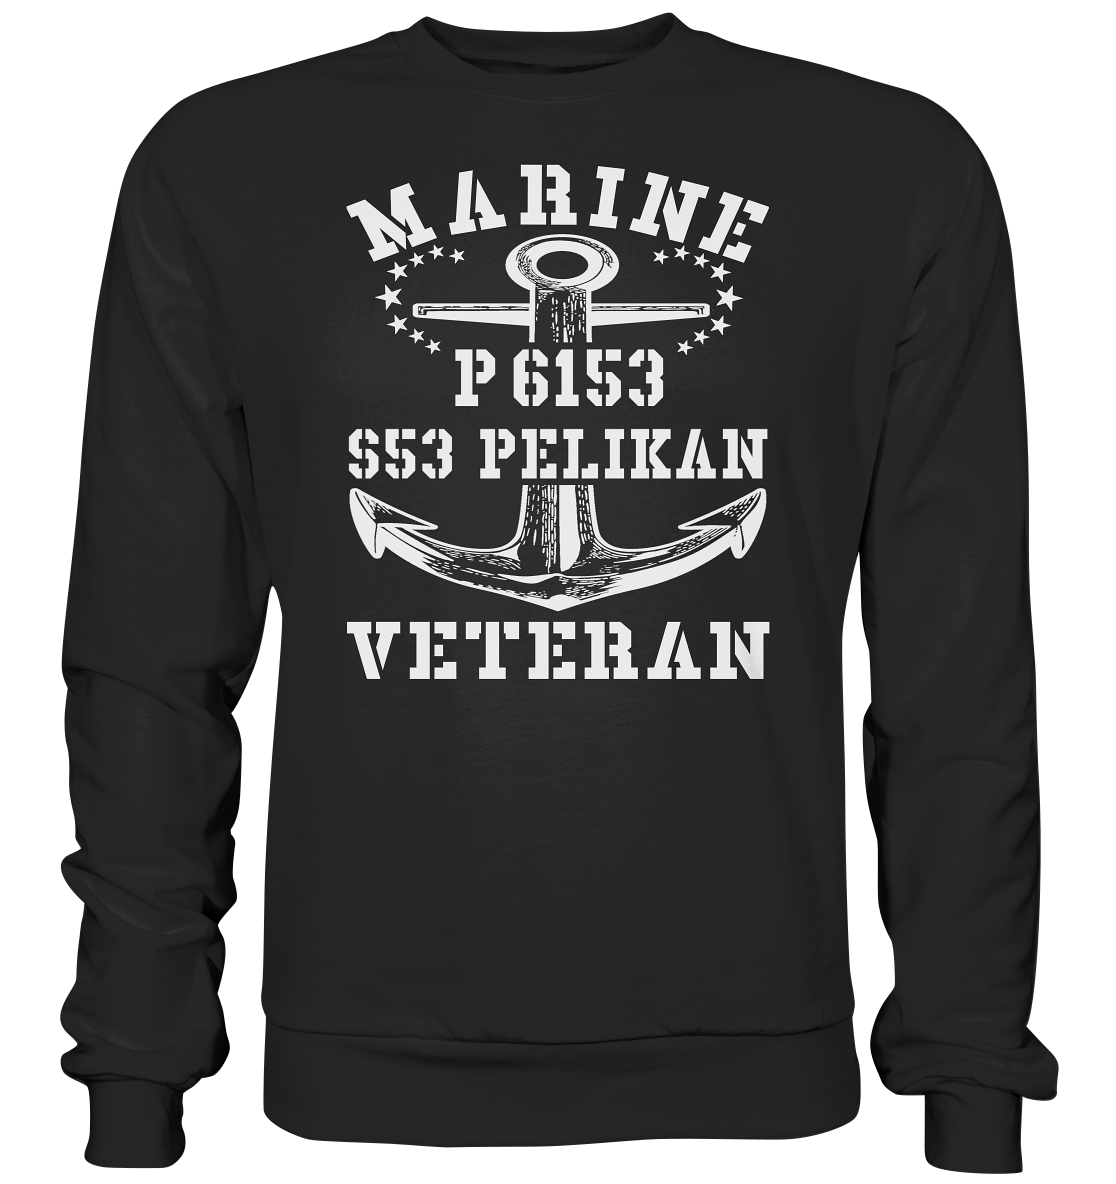 P6153 S53 PELIKAN Marine Veteran - Premium Sweatshirt